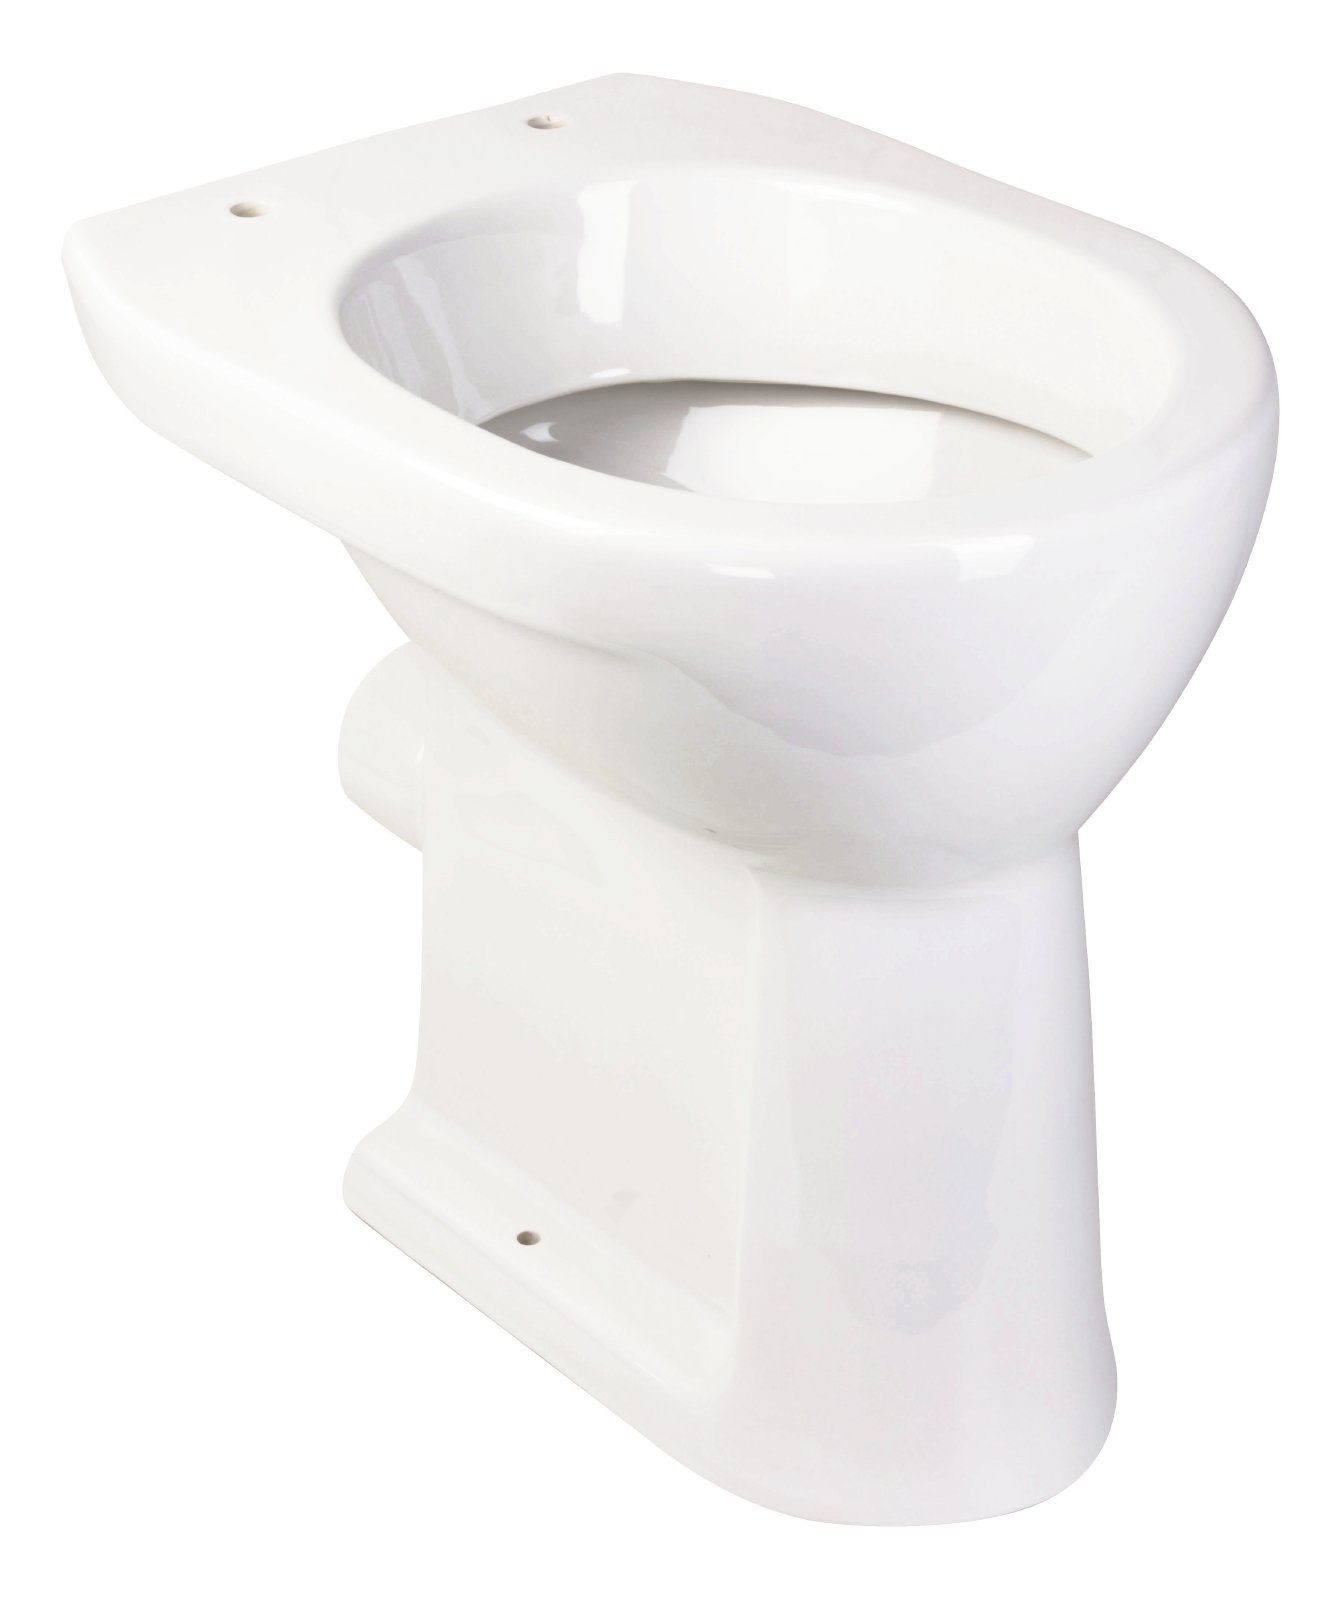 aquaSu Flachspül-WC, Bodenstehend, Abgang Waagerecht, Erhöhtes Stand WC +6 cm, Weiß, Flachspüler Abgang waagerecht, 025829